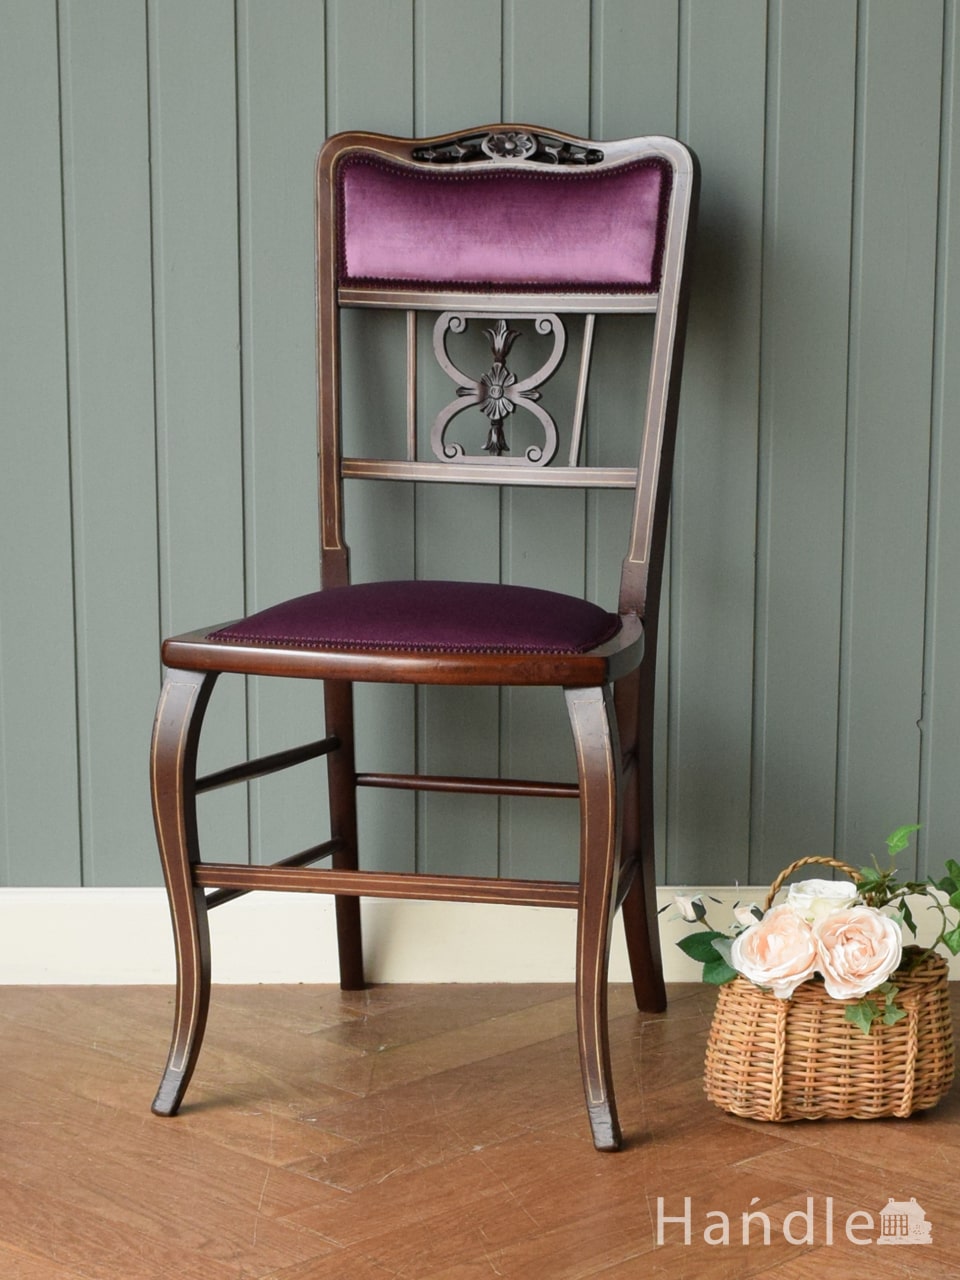 英国アンティークの美しいアーム付き椅子、透かし彫りの入ったサロンチェア (q-517-c)